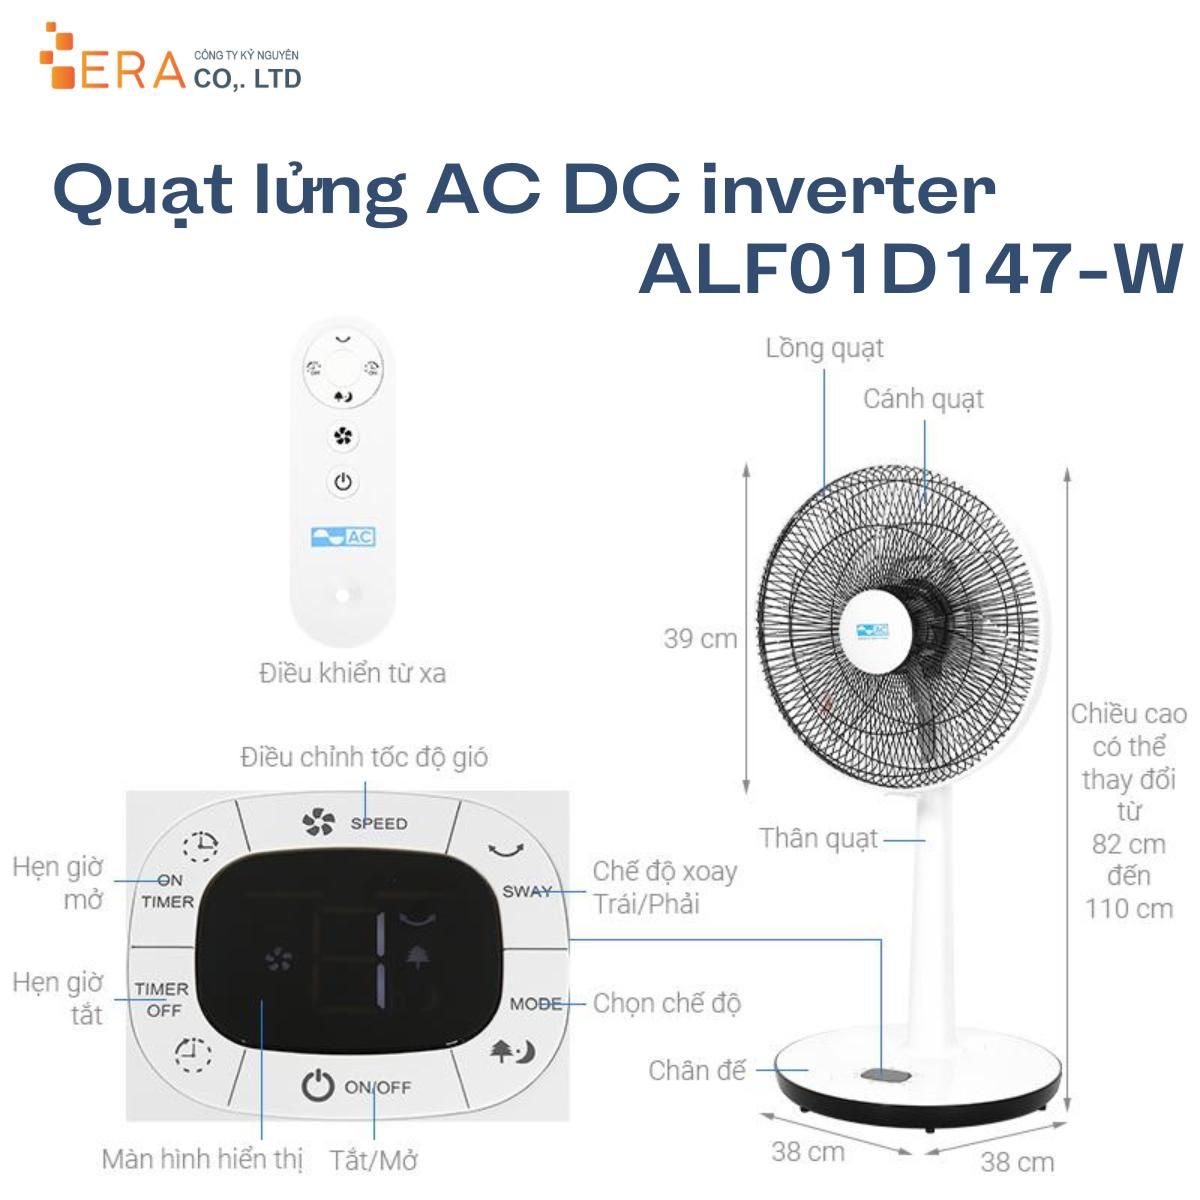  Quạt lửng AC DC inverter ALF01D147-W 